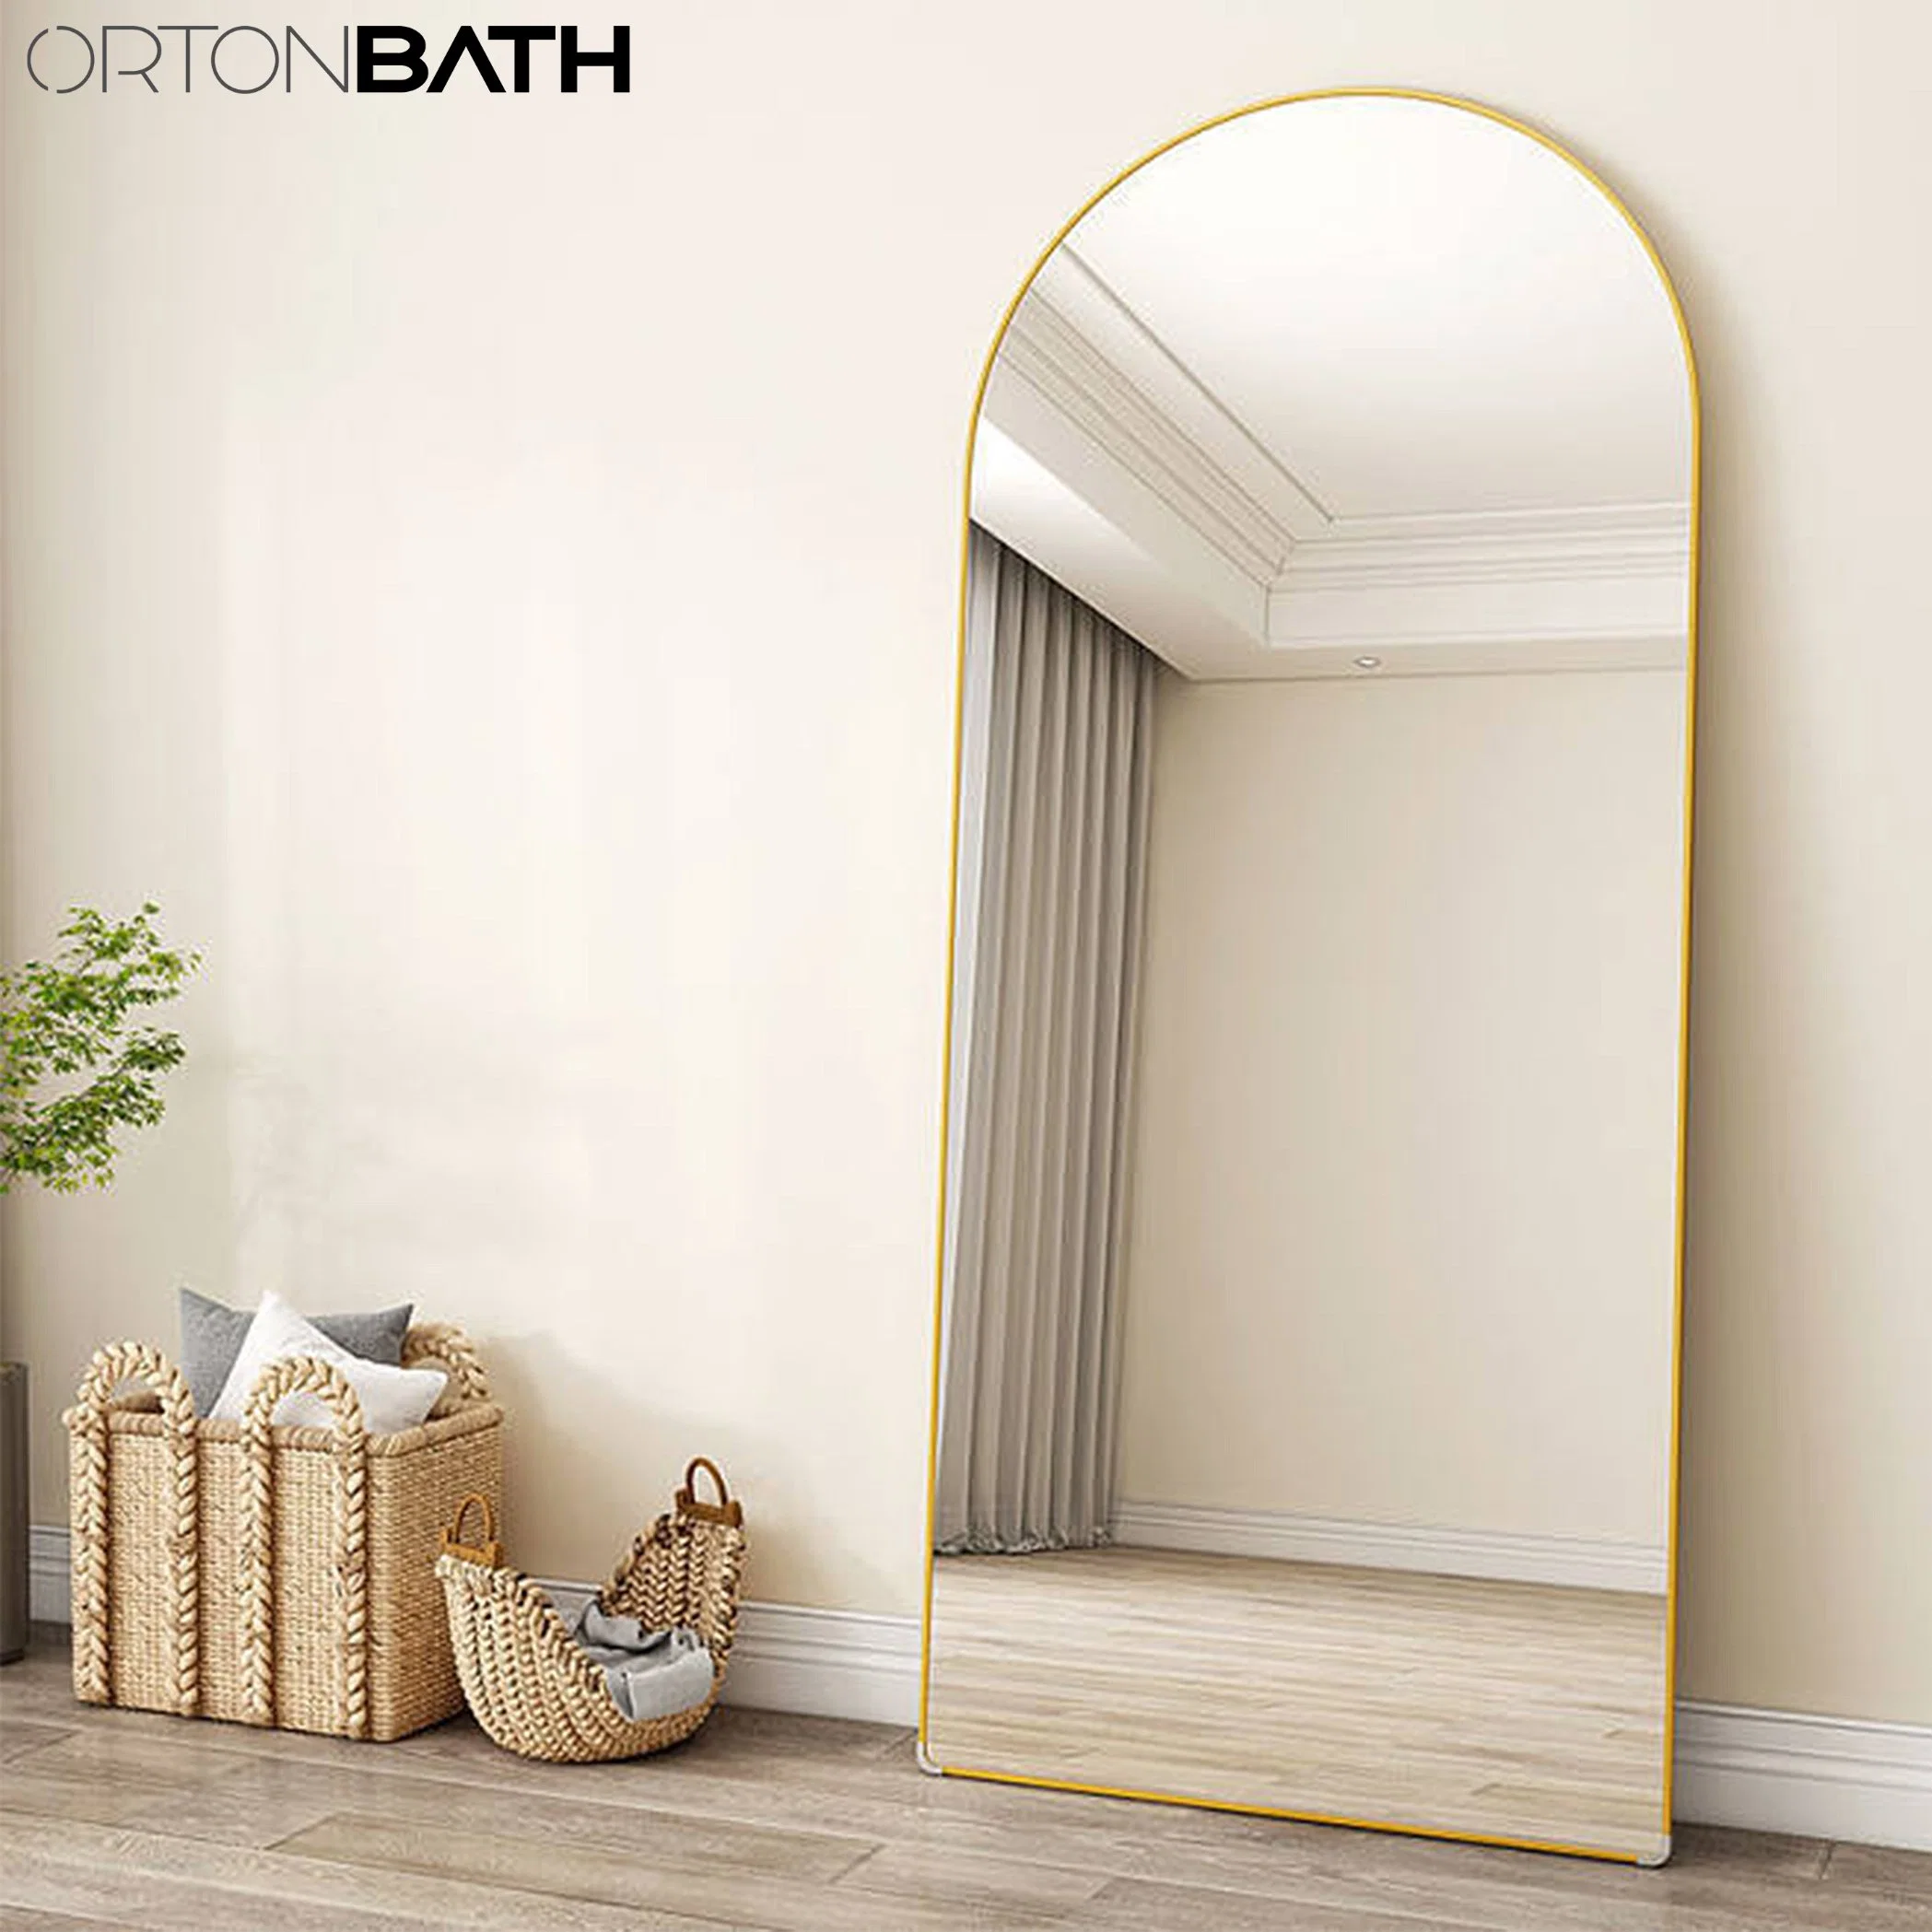 Ortonbath Full Length Floor Standing Mirror 65"× 22" напольное зеркало, зеркало с гладким лучом, большое зеркало с золотистым металлическим каркаем